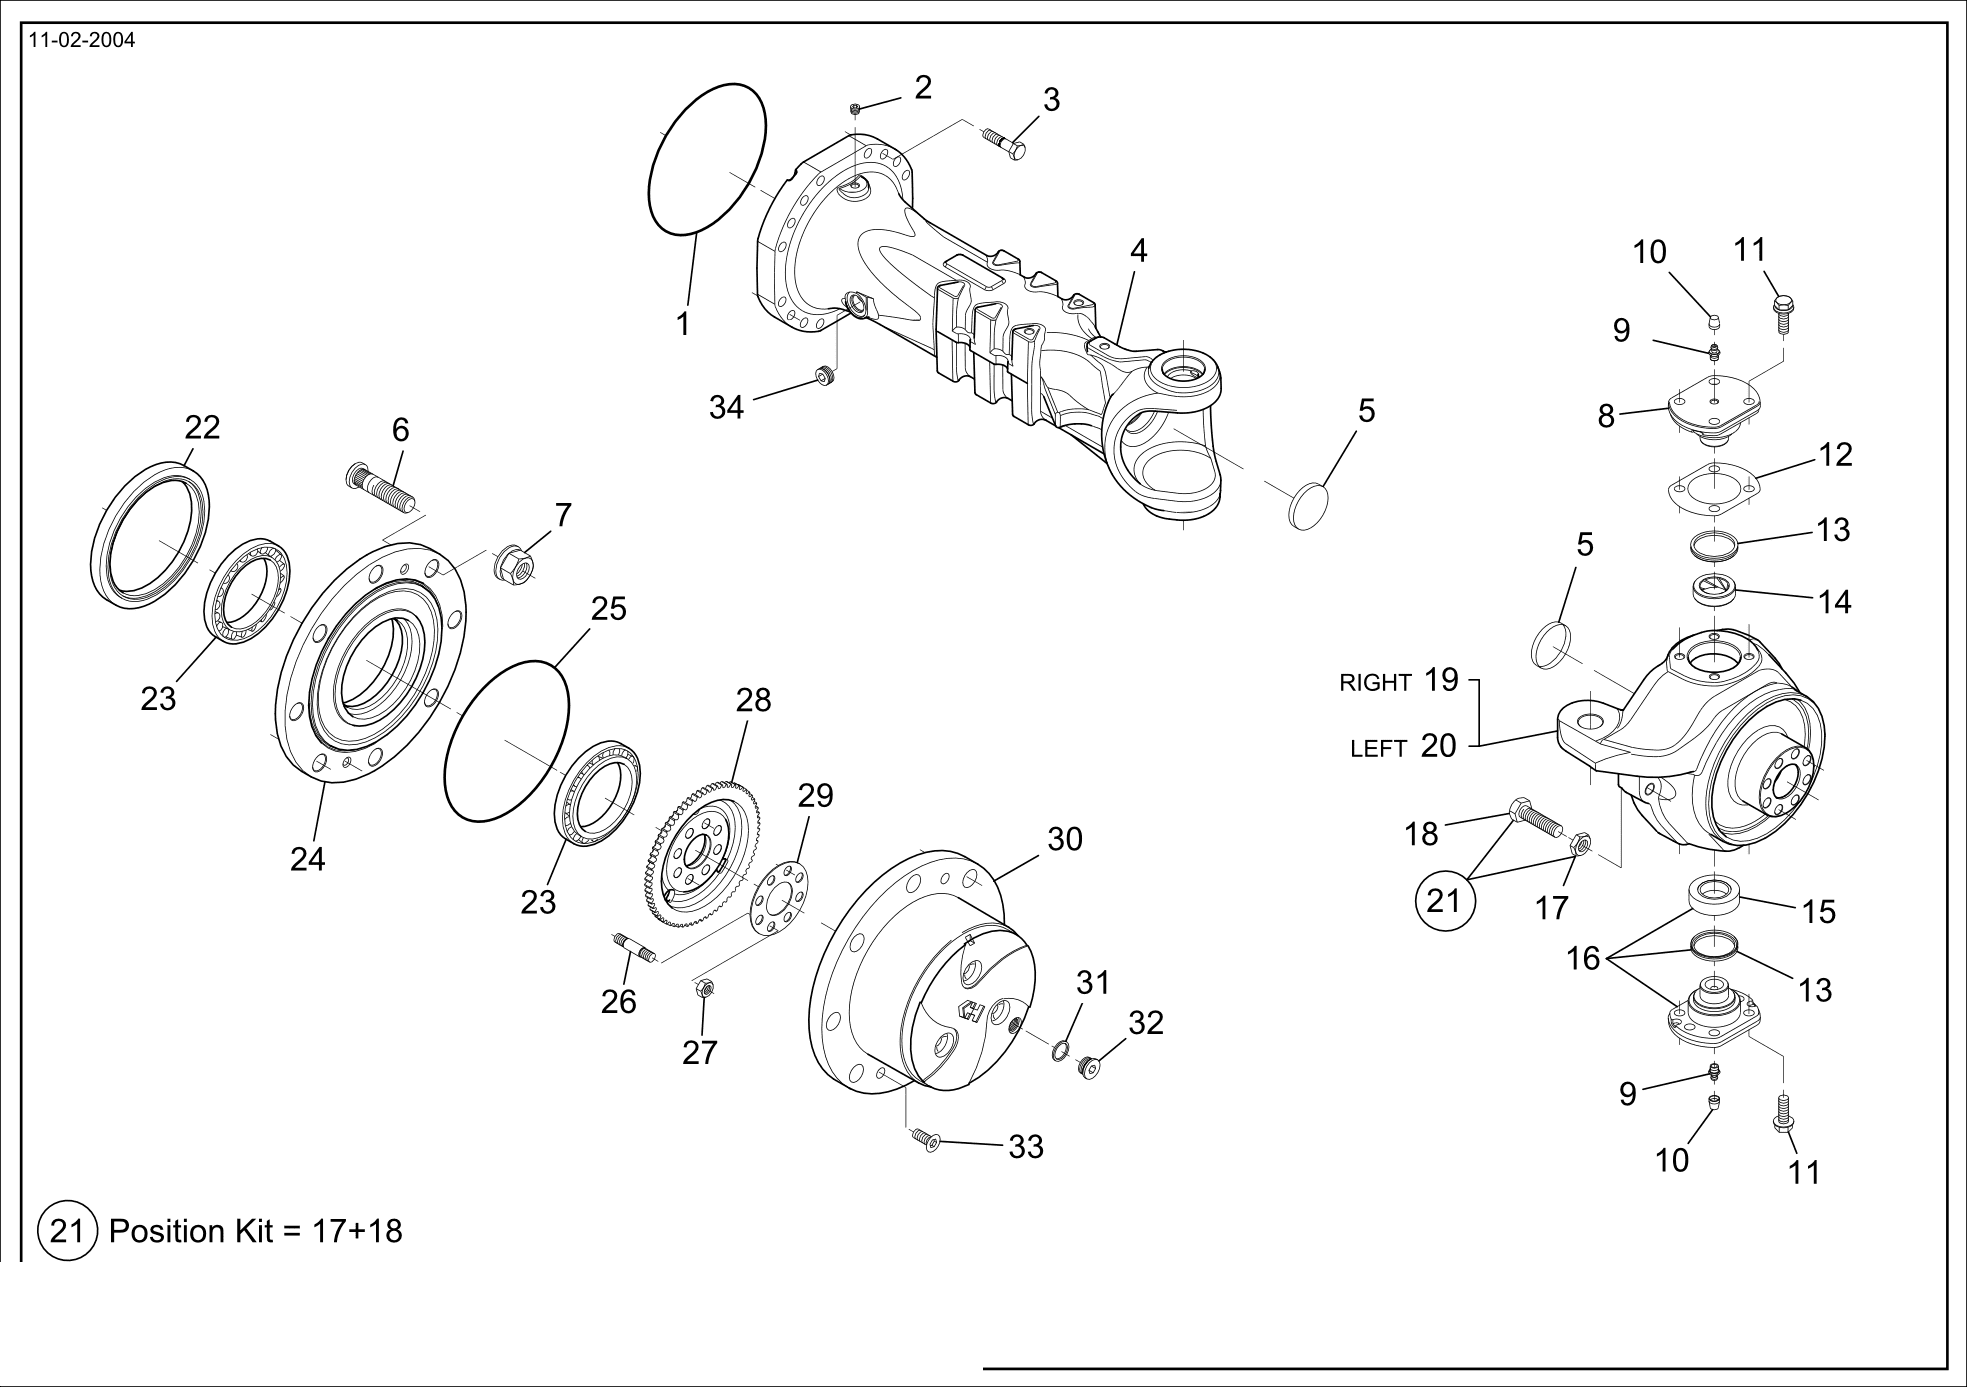 drawing for SCHOPF MASCHINENBAU GMBH 101170 - SHEET (figure 3)